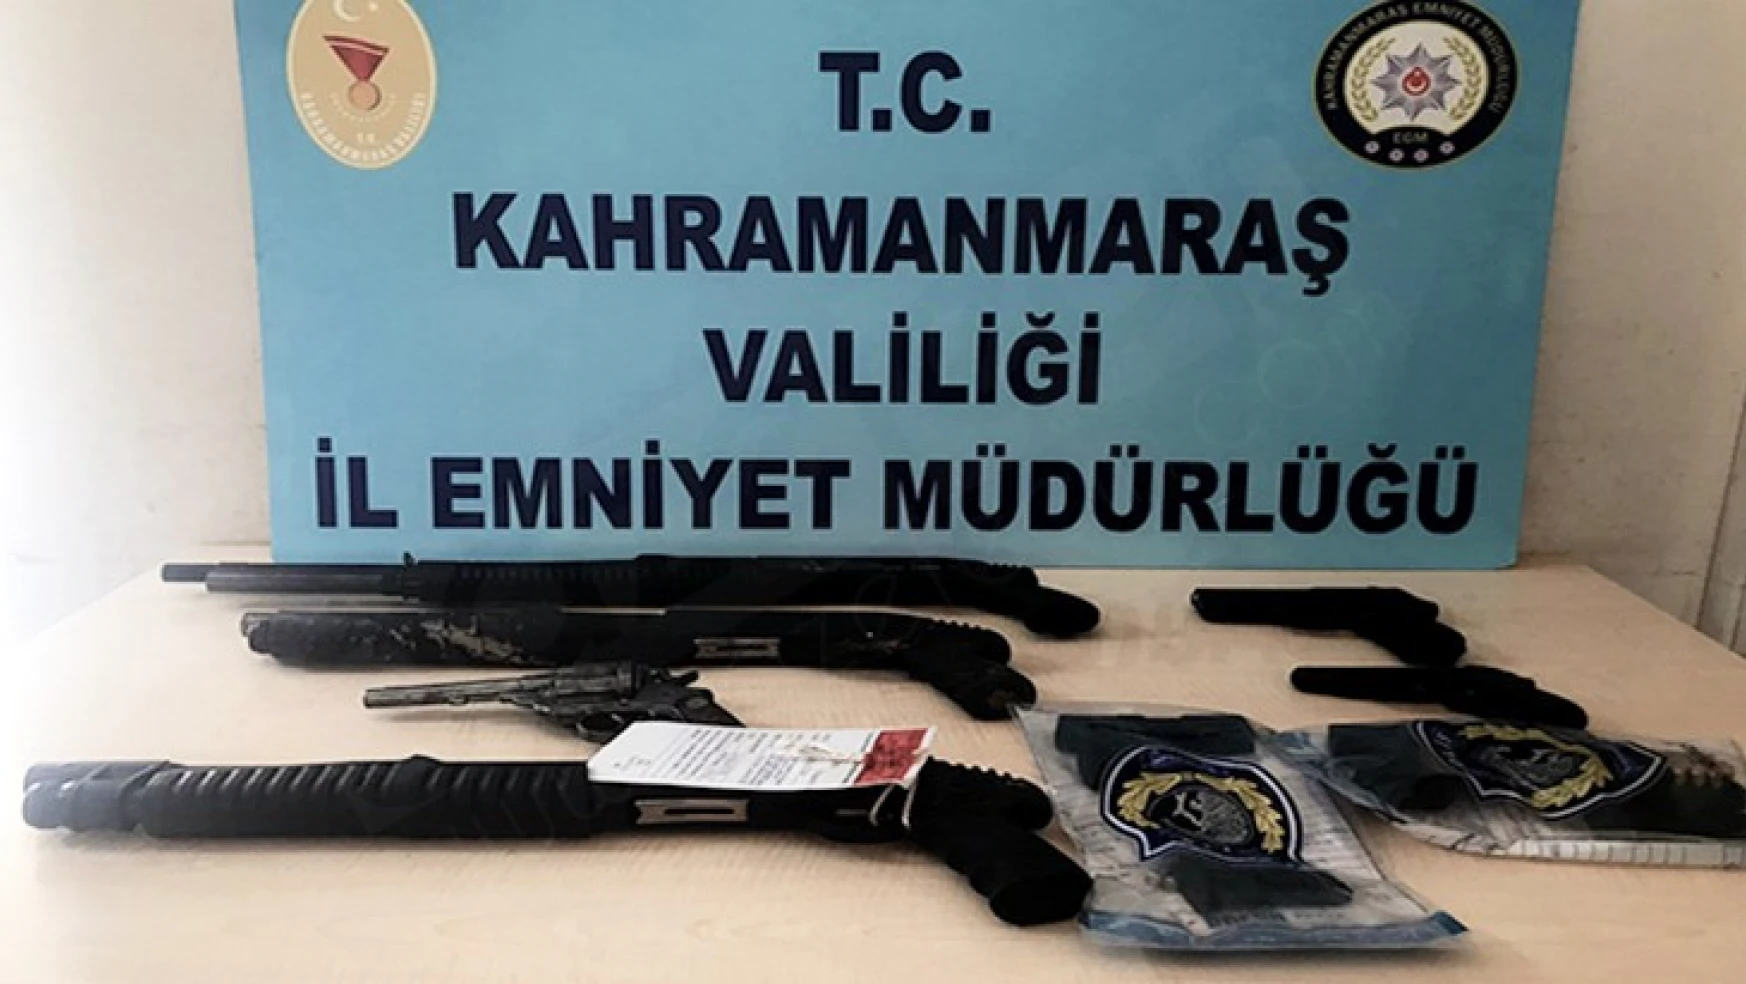 Kahramanmaraş'ta düzenlenen operasyonlarda 22 şüpheliden 24 silah ele geçirildi